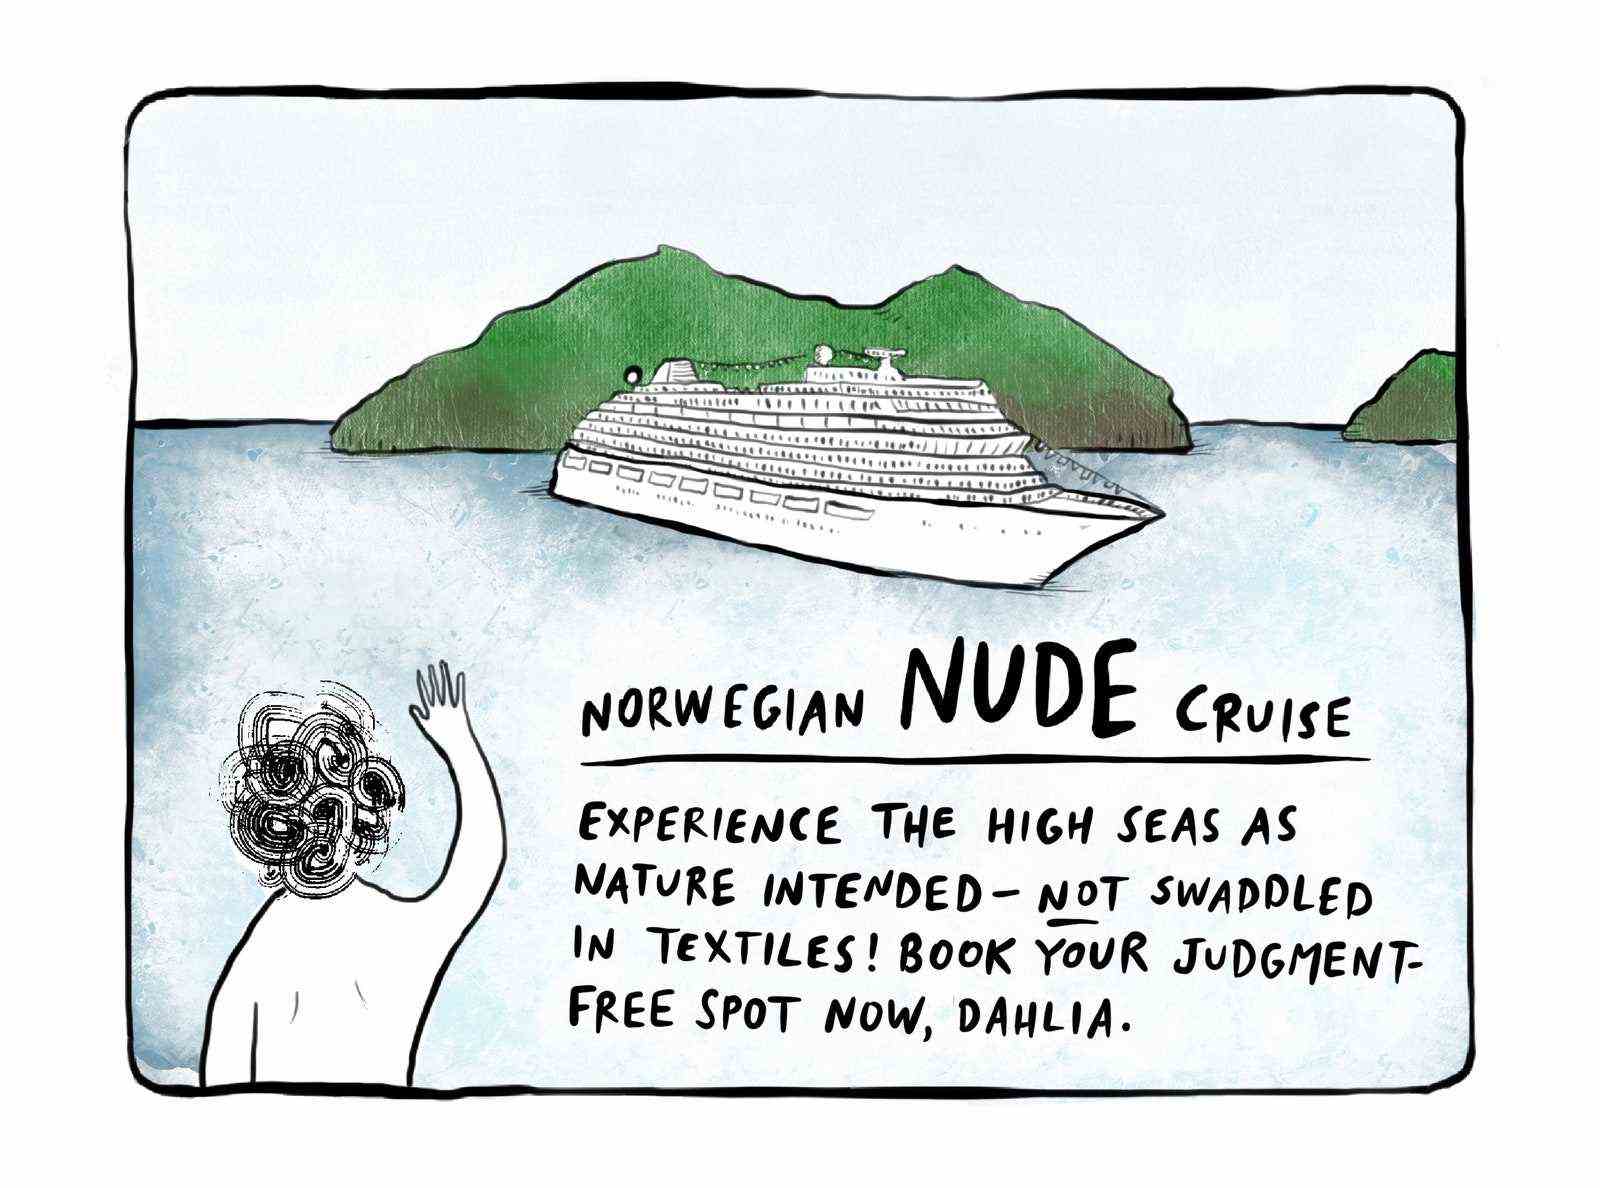 Internet-Werbung für eine Nackt-Norweger-Kreuzfahrt.